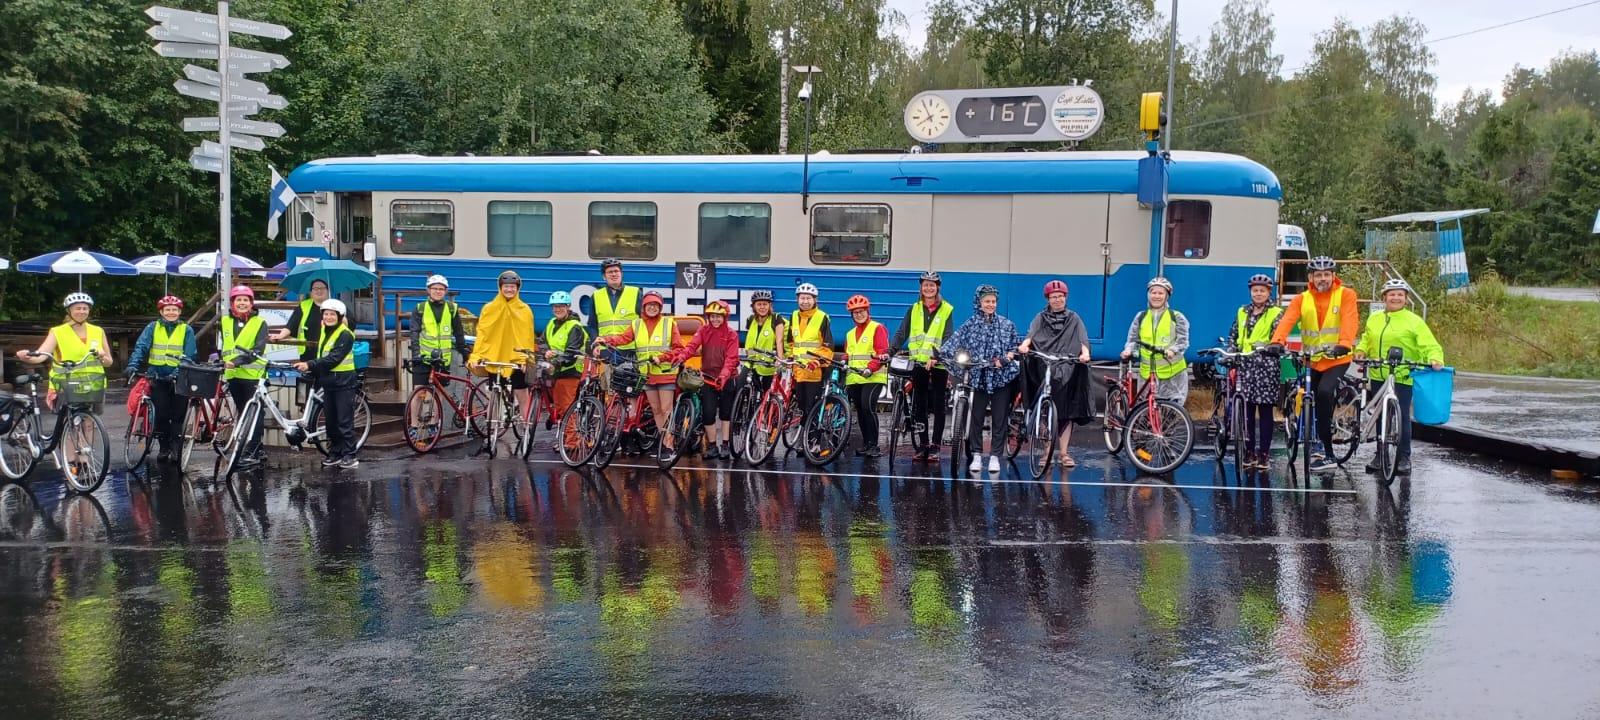 Henkilöitä polkupyörien kanssa junavaunun edessä.